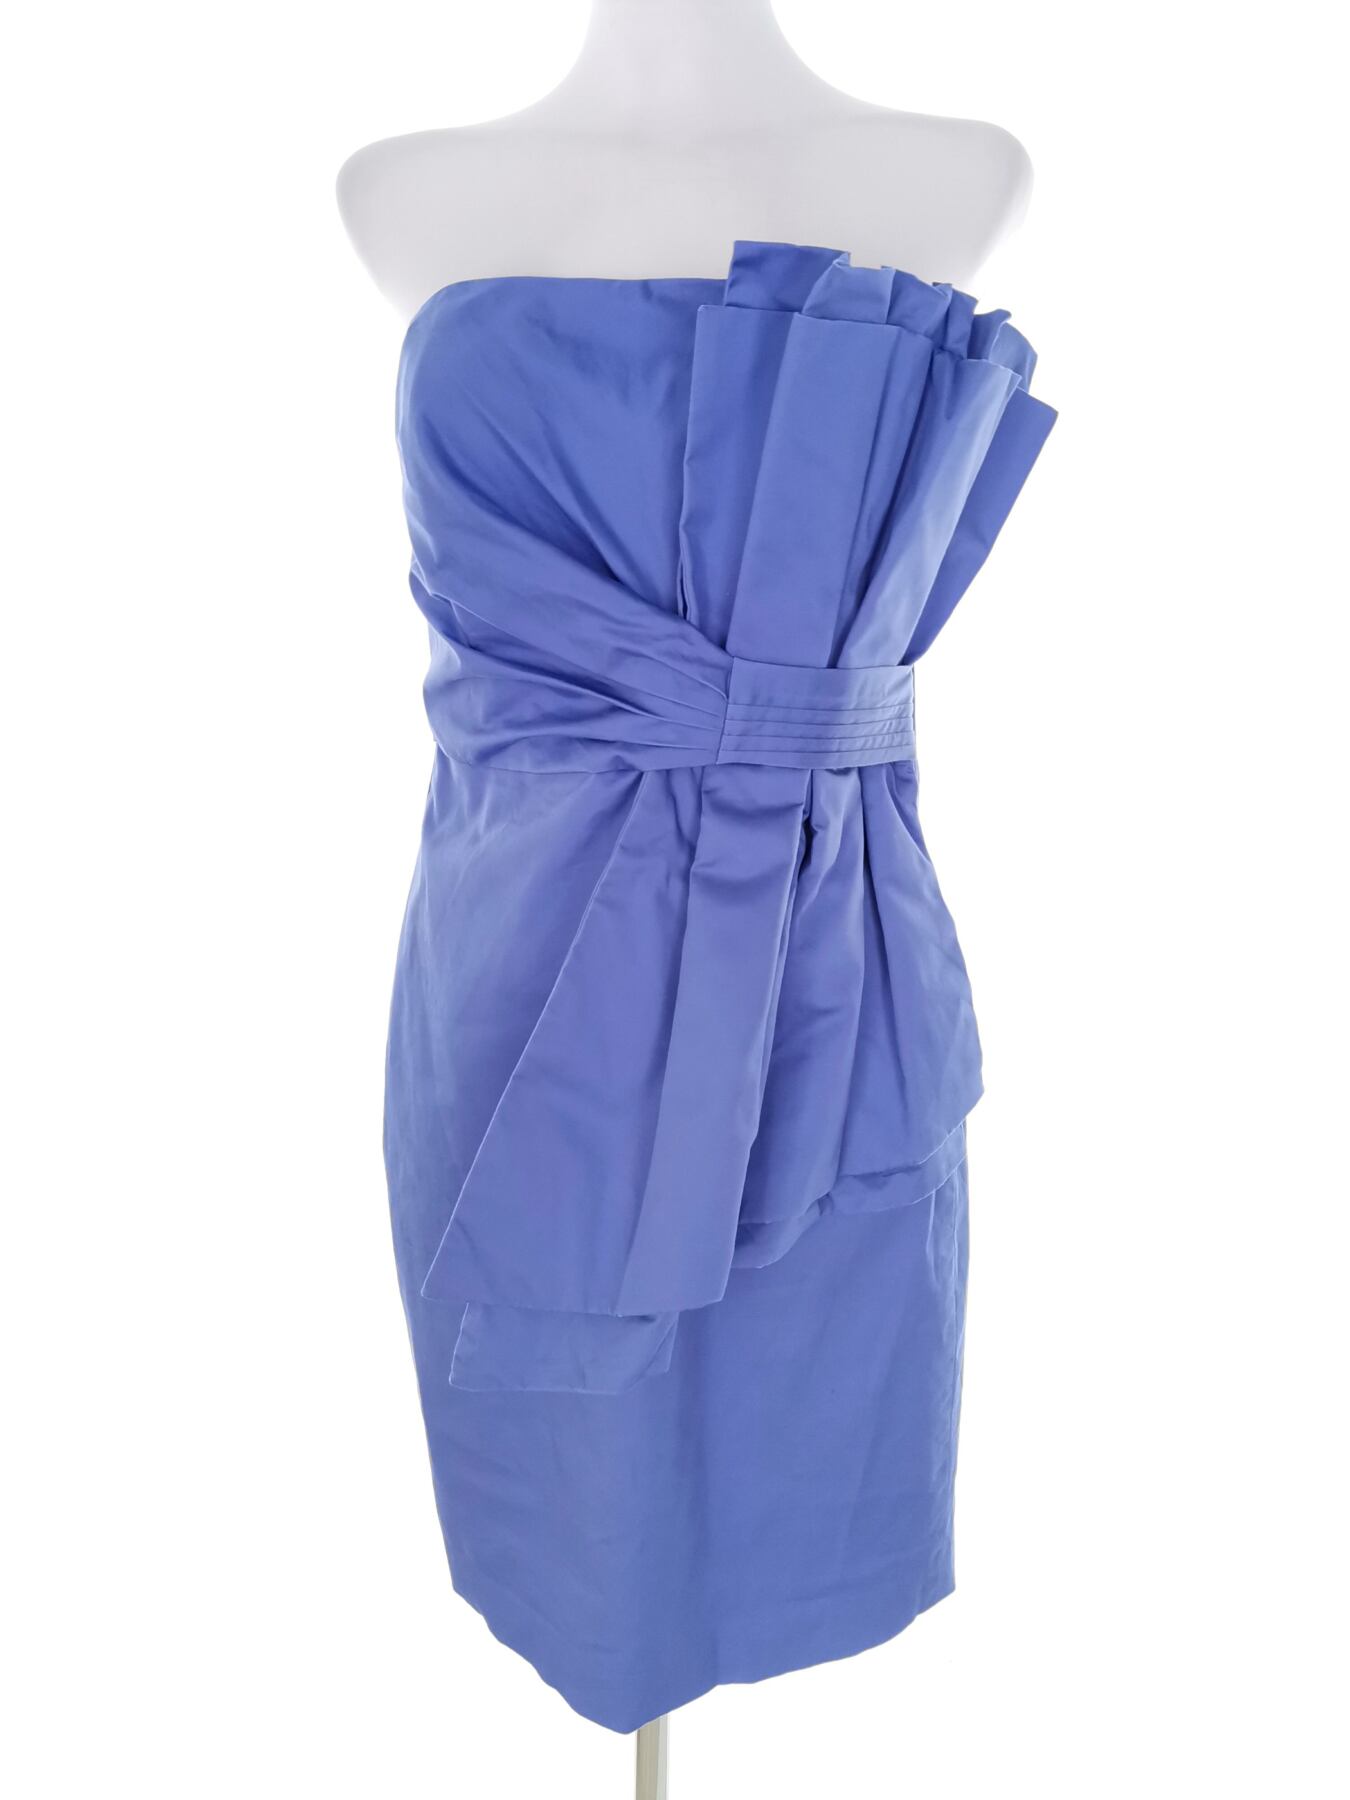 Ted Baker Rozmiar 2 (38) Kolor Niebieski Odkryte Ramiona Suknia Balowa Sukienka Wieczorowa Bezrękawnik Do Kolan Materiał Bawełna